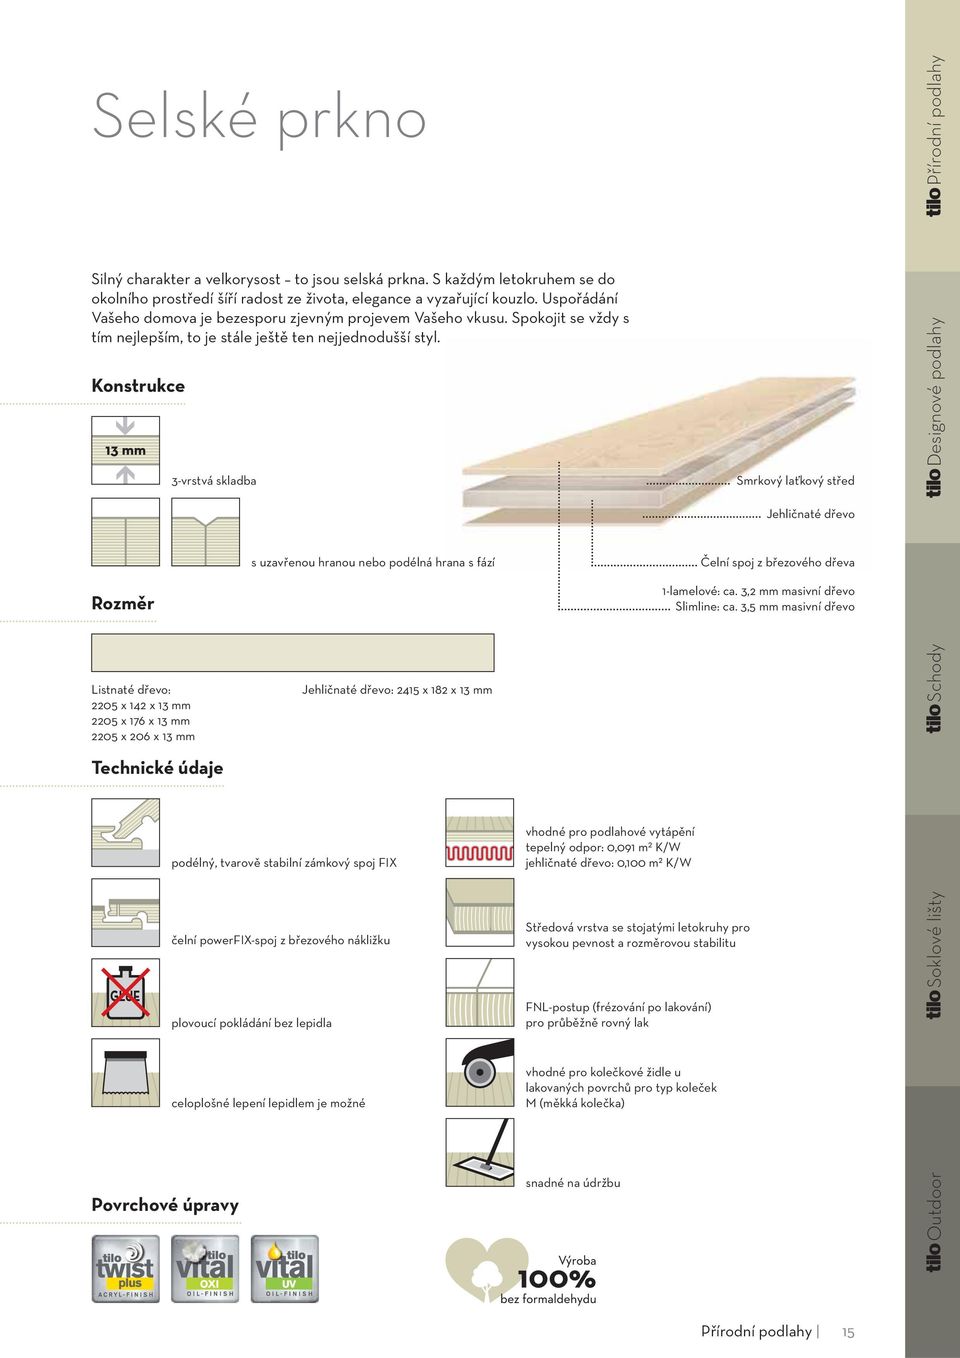 Konstrukce 3-vrstvá skladba Smrkový laťkový střed Designové podlahy Jehličnaté dřevo Rozměr s uzavřenou hranou nebo podélná hrana s fází Čelní spoj z březového dřeva 1-lamelové: ca.